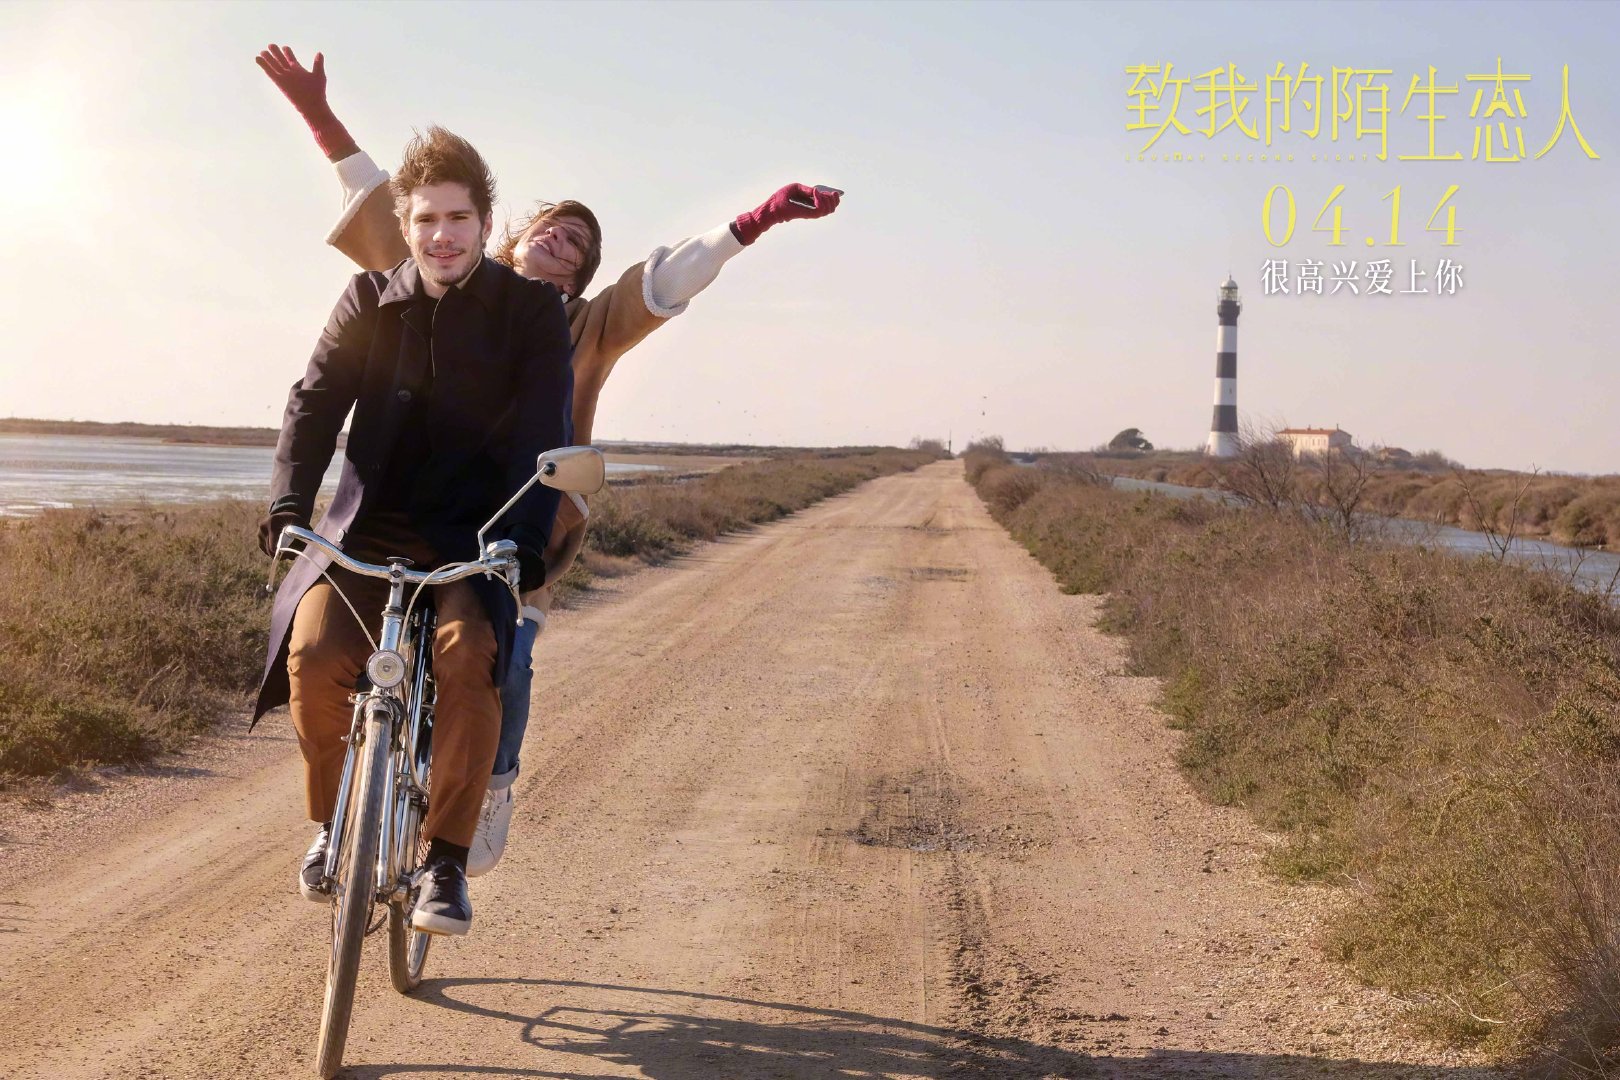 法国爱情电影《致我的陌生恋人》4月14日上映